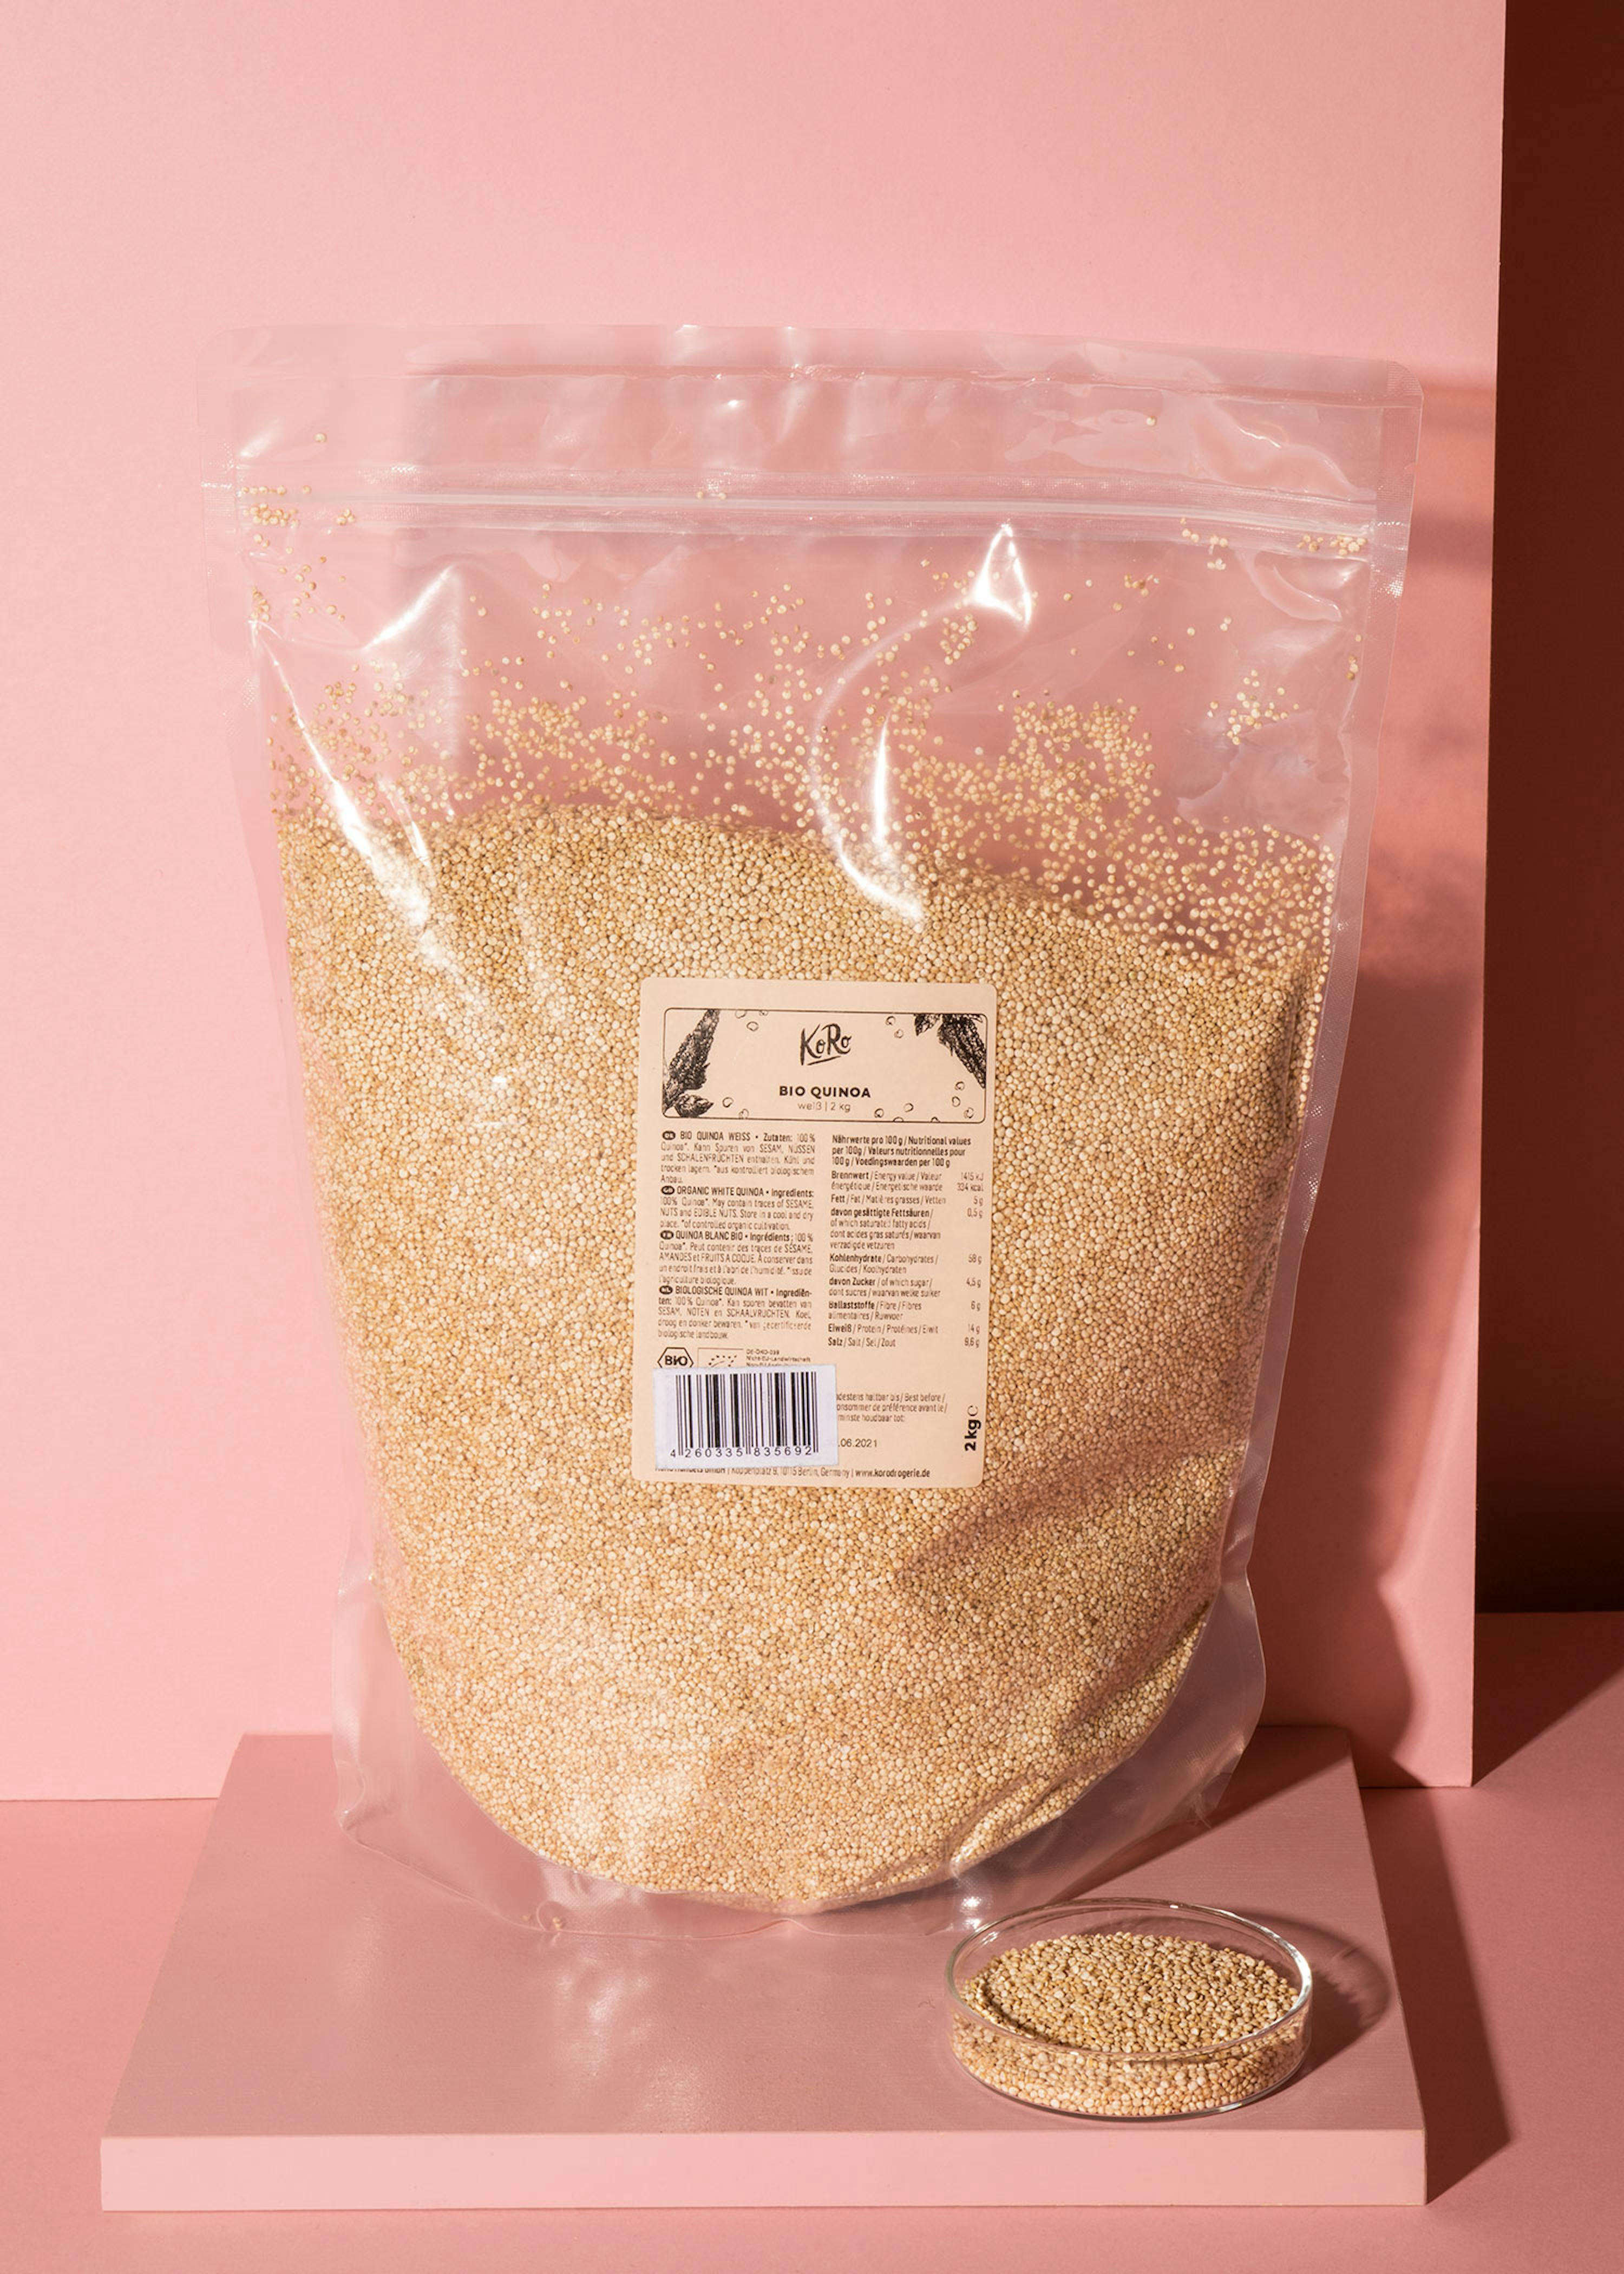 Osta luomu vaalea kvinoa 2 kg | KoRo Suomi